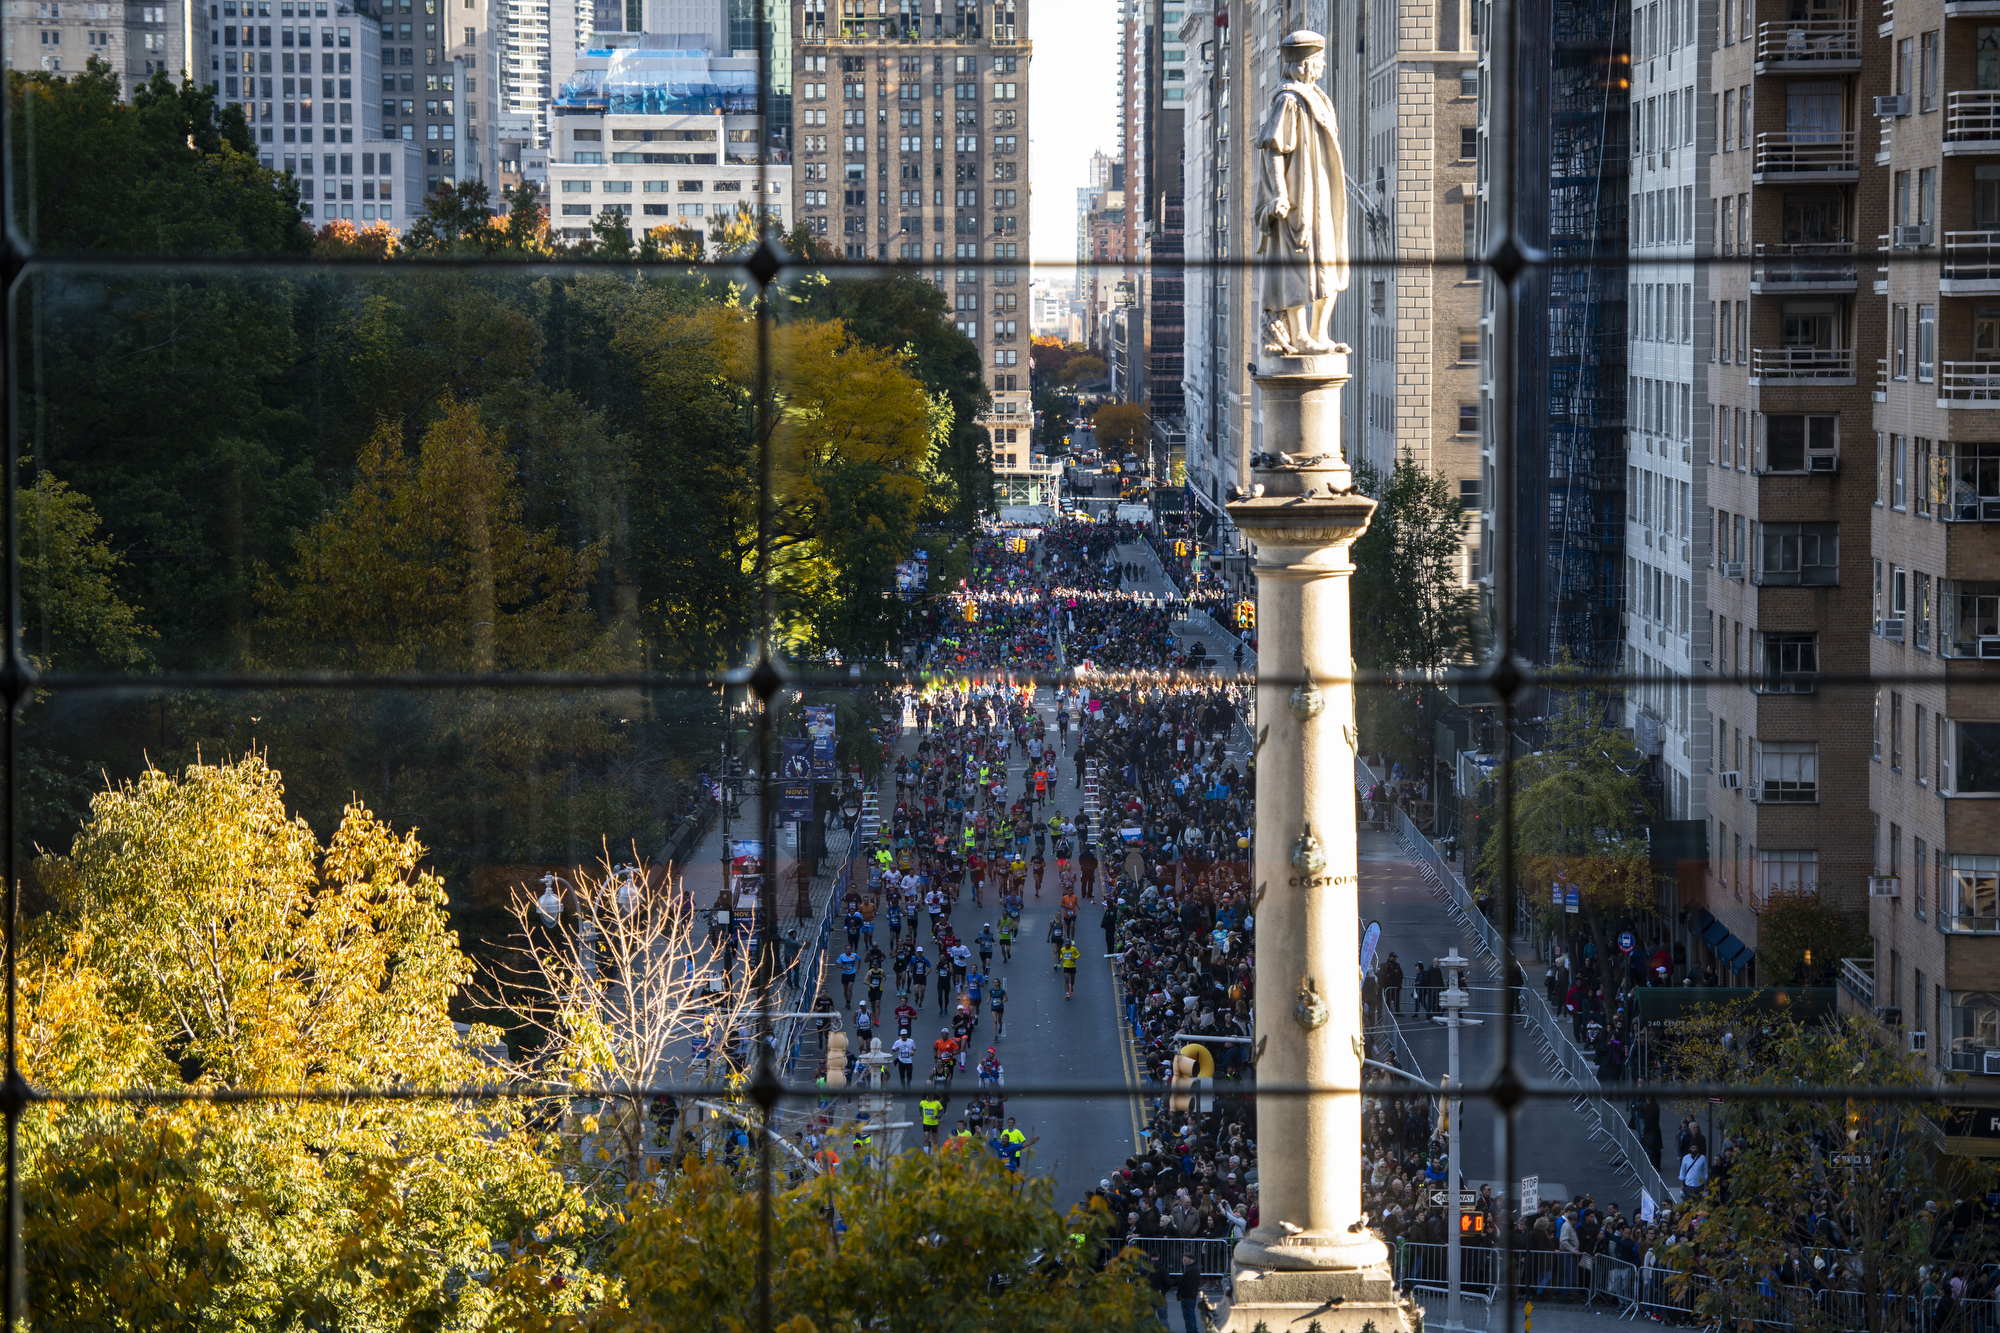 Runners in the New York City Marathon